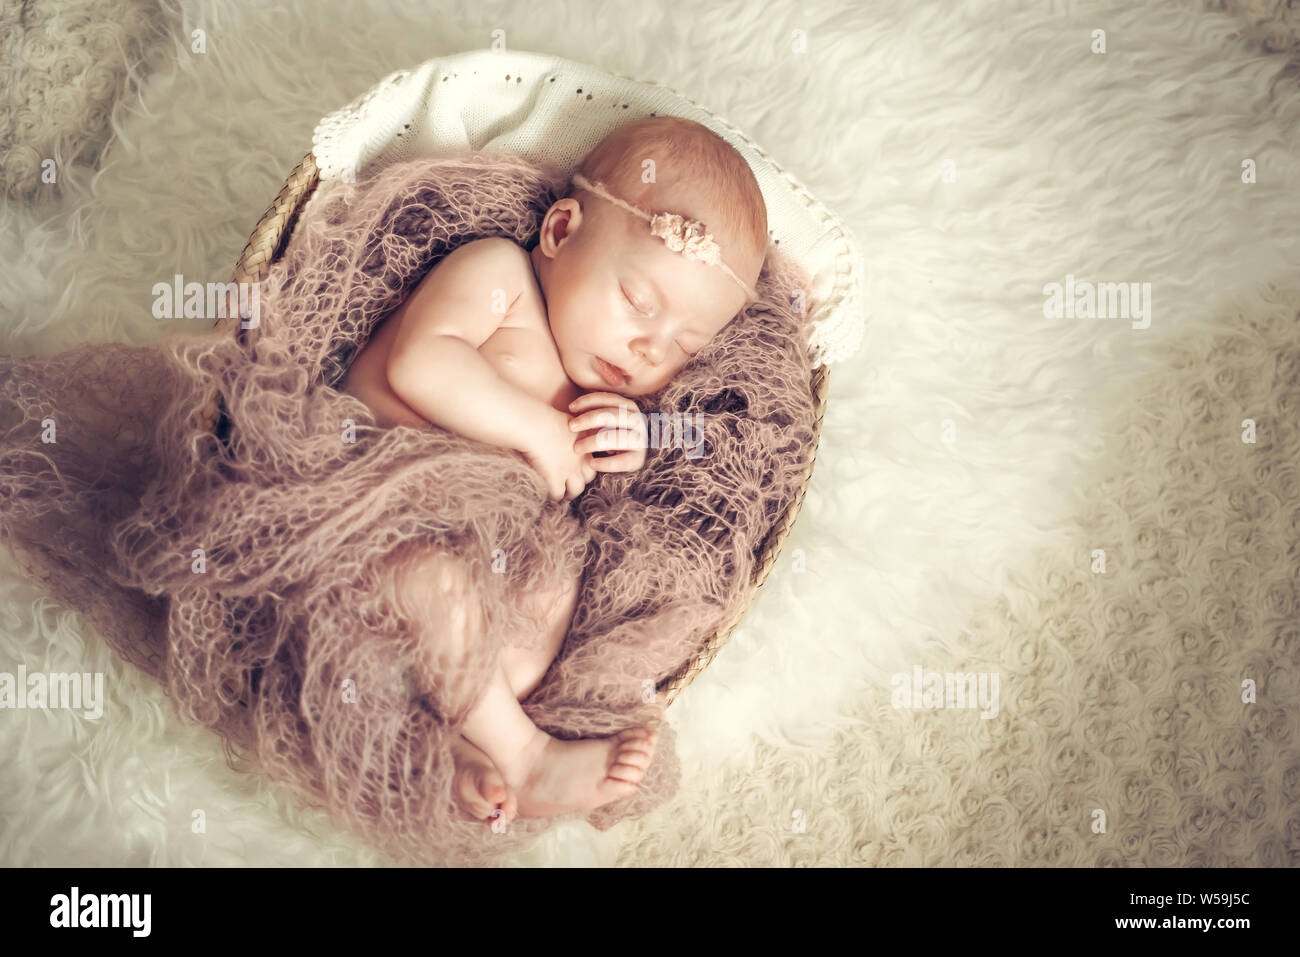 Bebé niña durmiendo en una cesta. Concepto de disparo, la inocencia de los recién nacidos Foto de stock